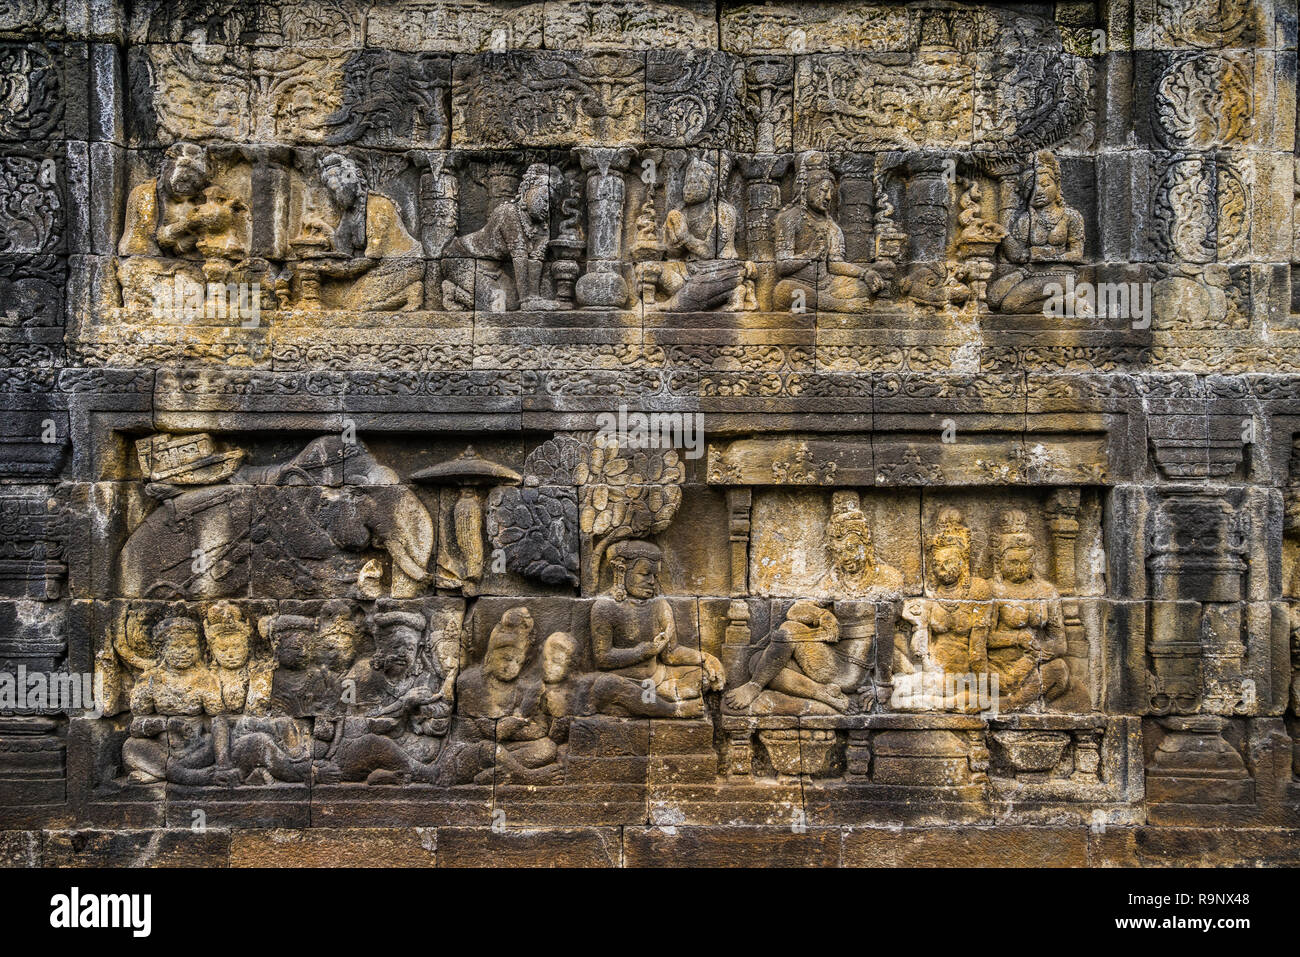 Bas-relief de bord sur une balustrade de 9e siècle Borobudur temple bouddhiste, les quelque 2672 panneaux forment l'un des plus complets n bouddhiste Banque D'Images